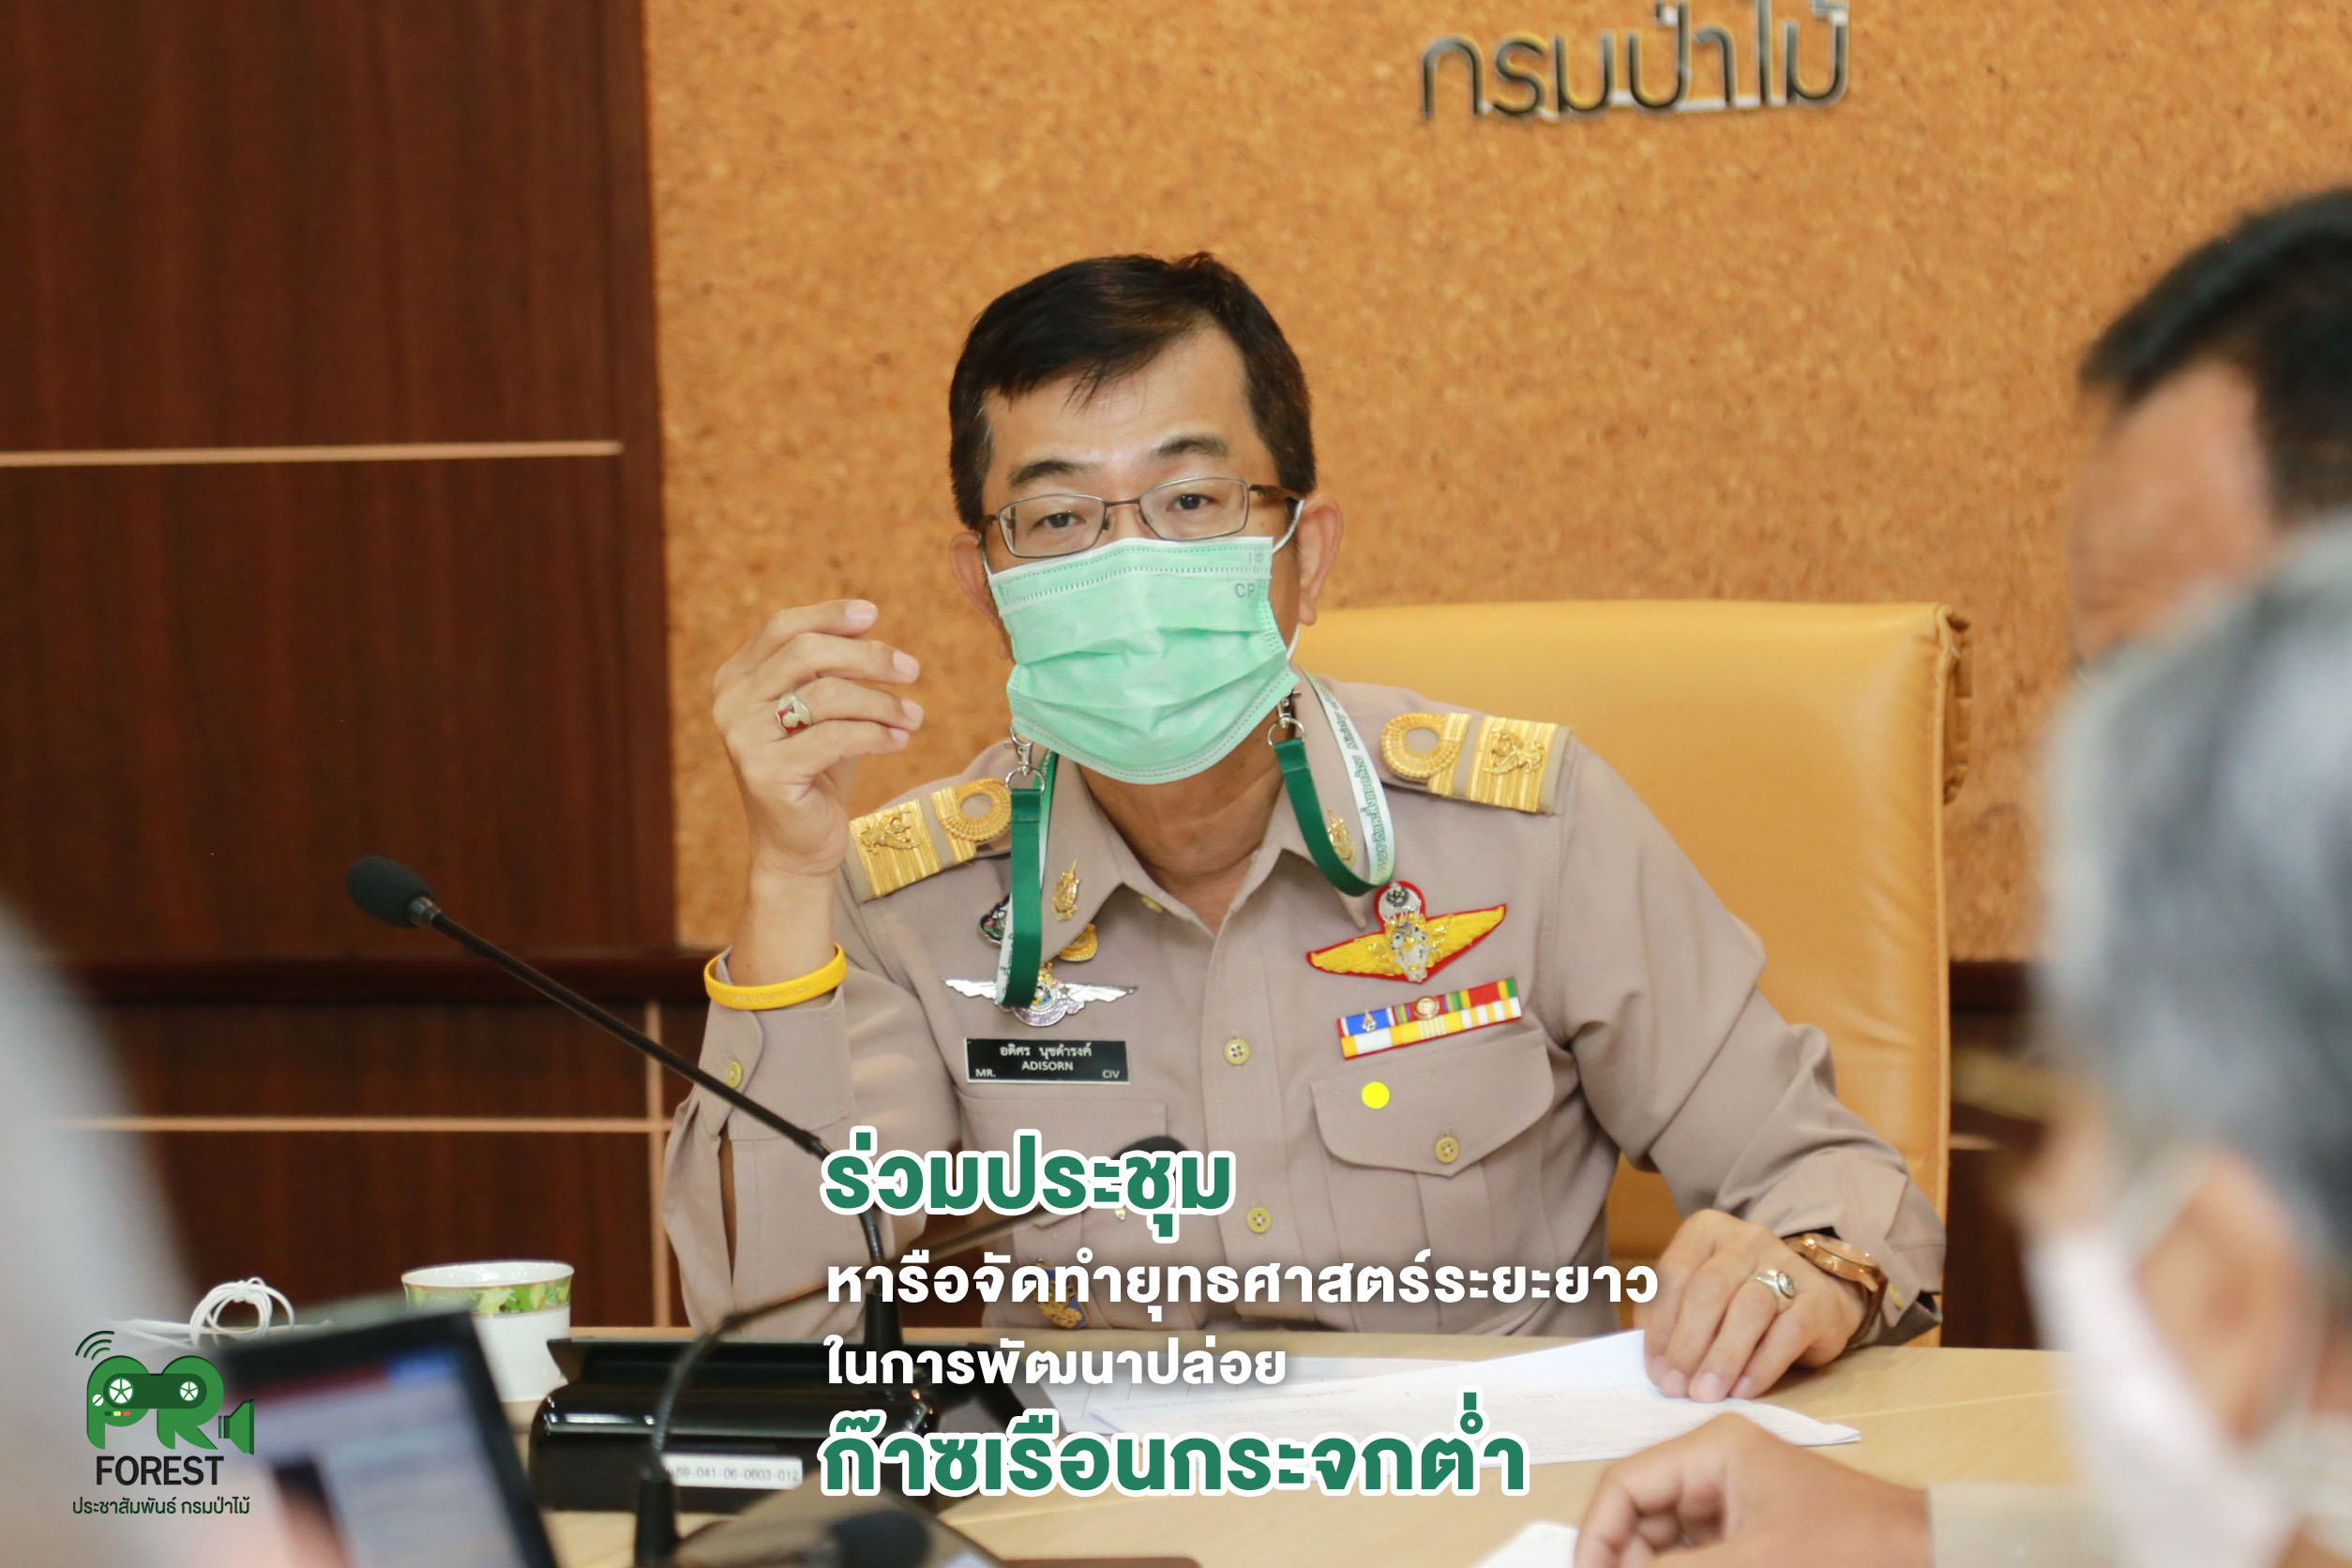 นายอดิศร นุชดำรงค์ อธิบดีกรมป่าไม้ เข้าร่วมประชุมหารือการจัดทำยุทธศาสตร์ระยะยาวในการพัฒนาแบบปล่อยก๊าซเรือนกระจกต่ำของประเทศไทย